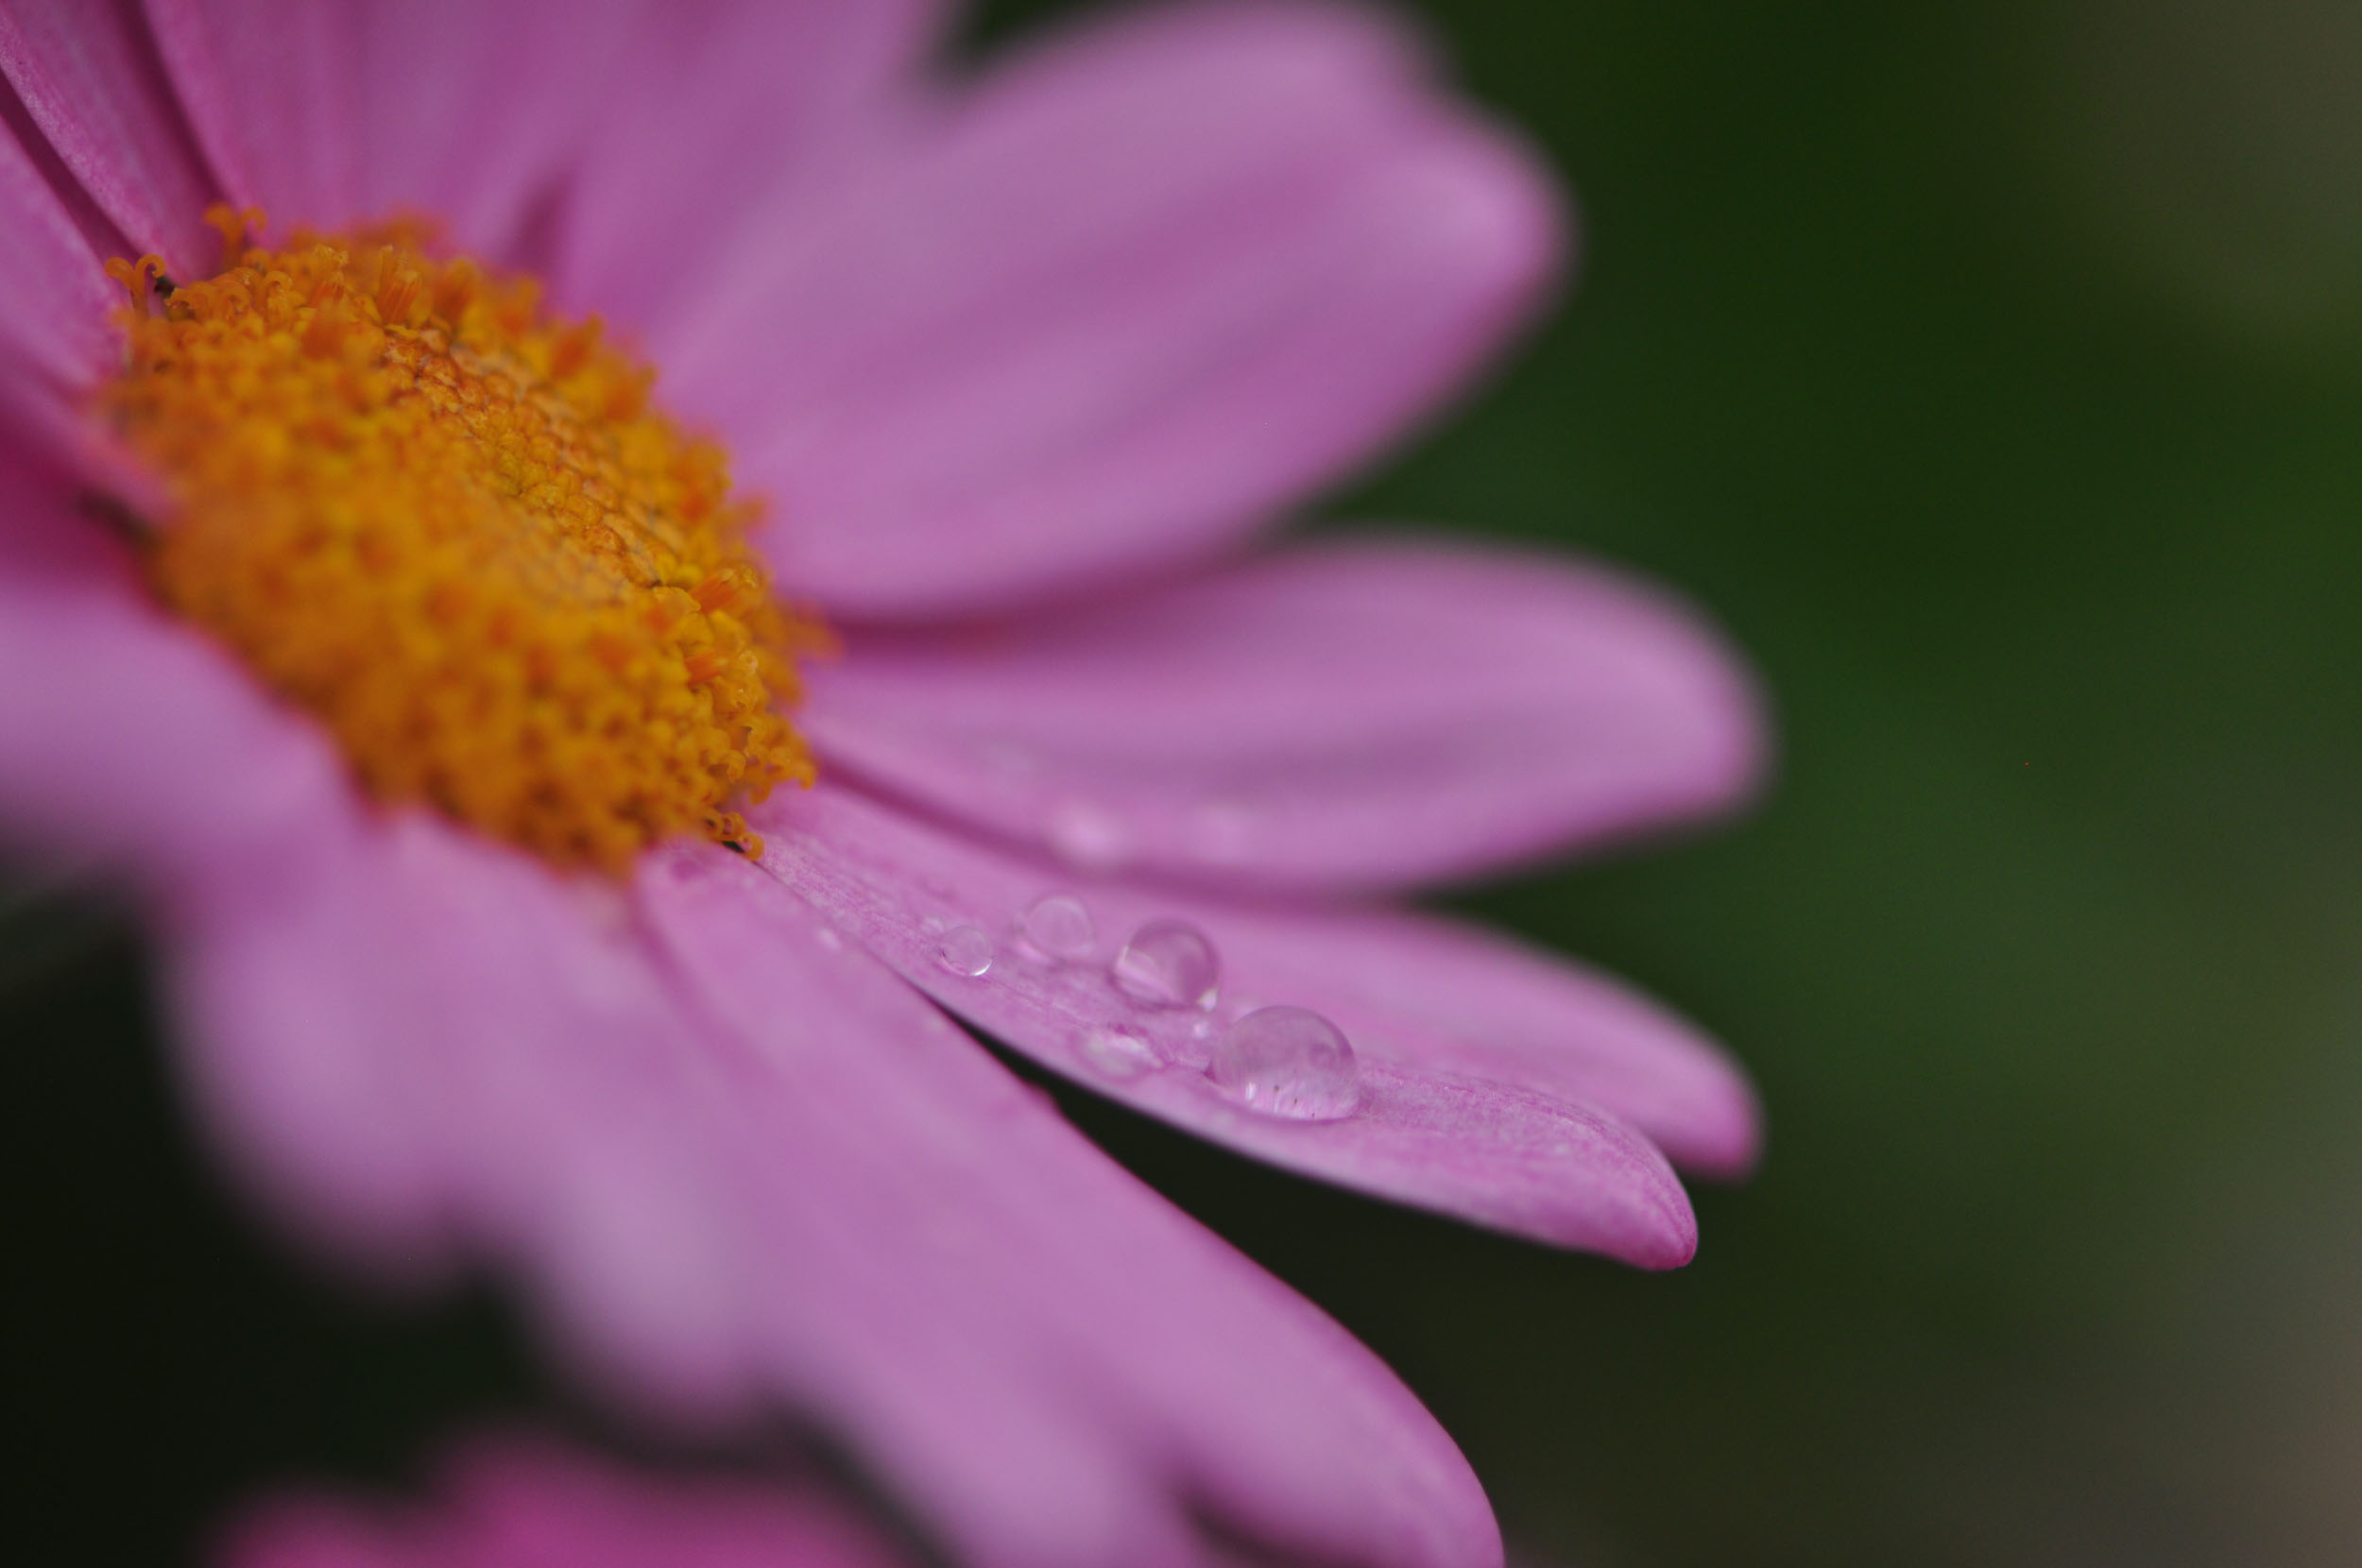 Raindrops on a daisy